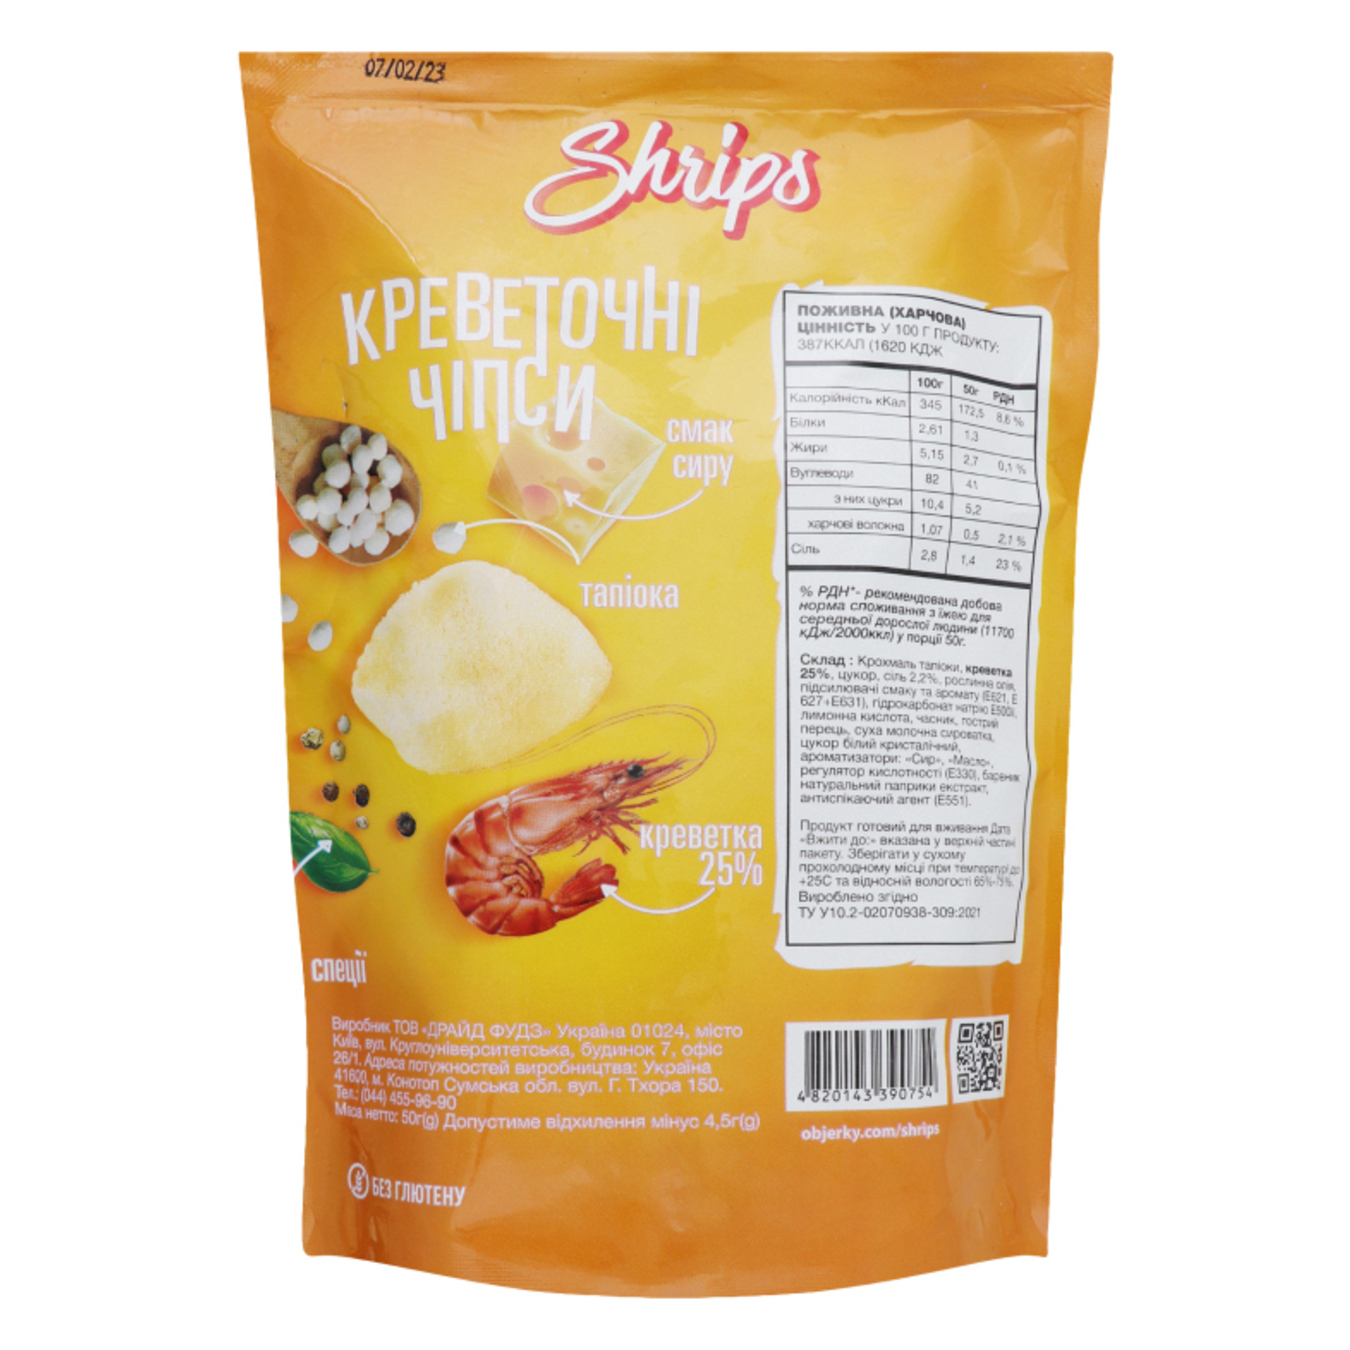 Чипсы креветочные Shrips вкус сыра 50г 4